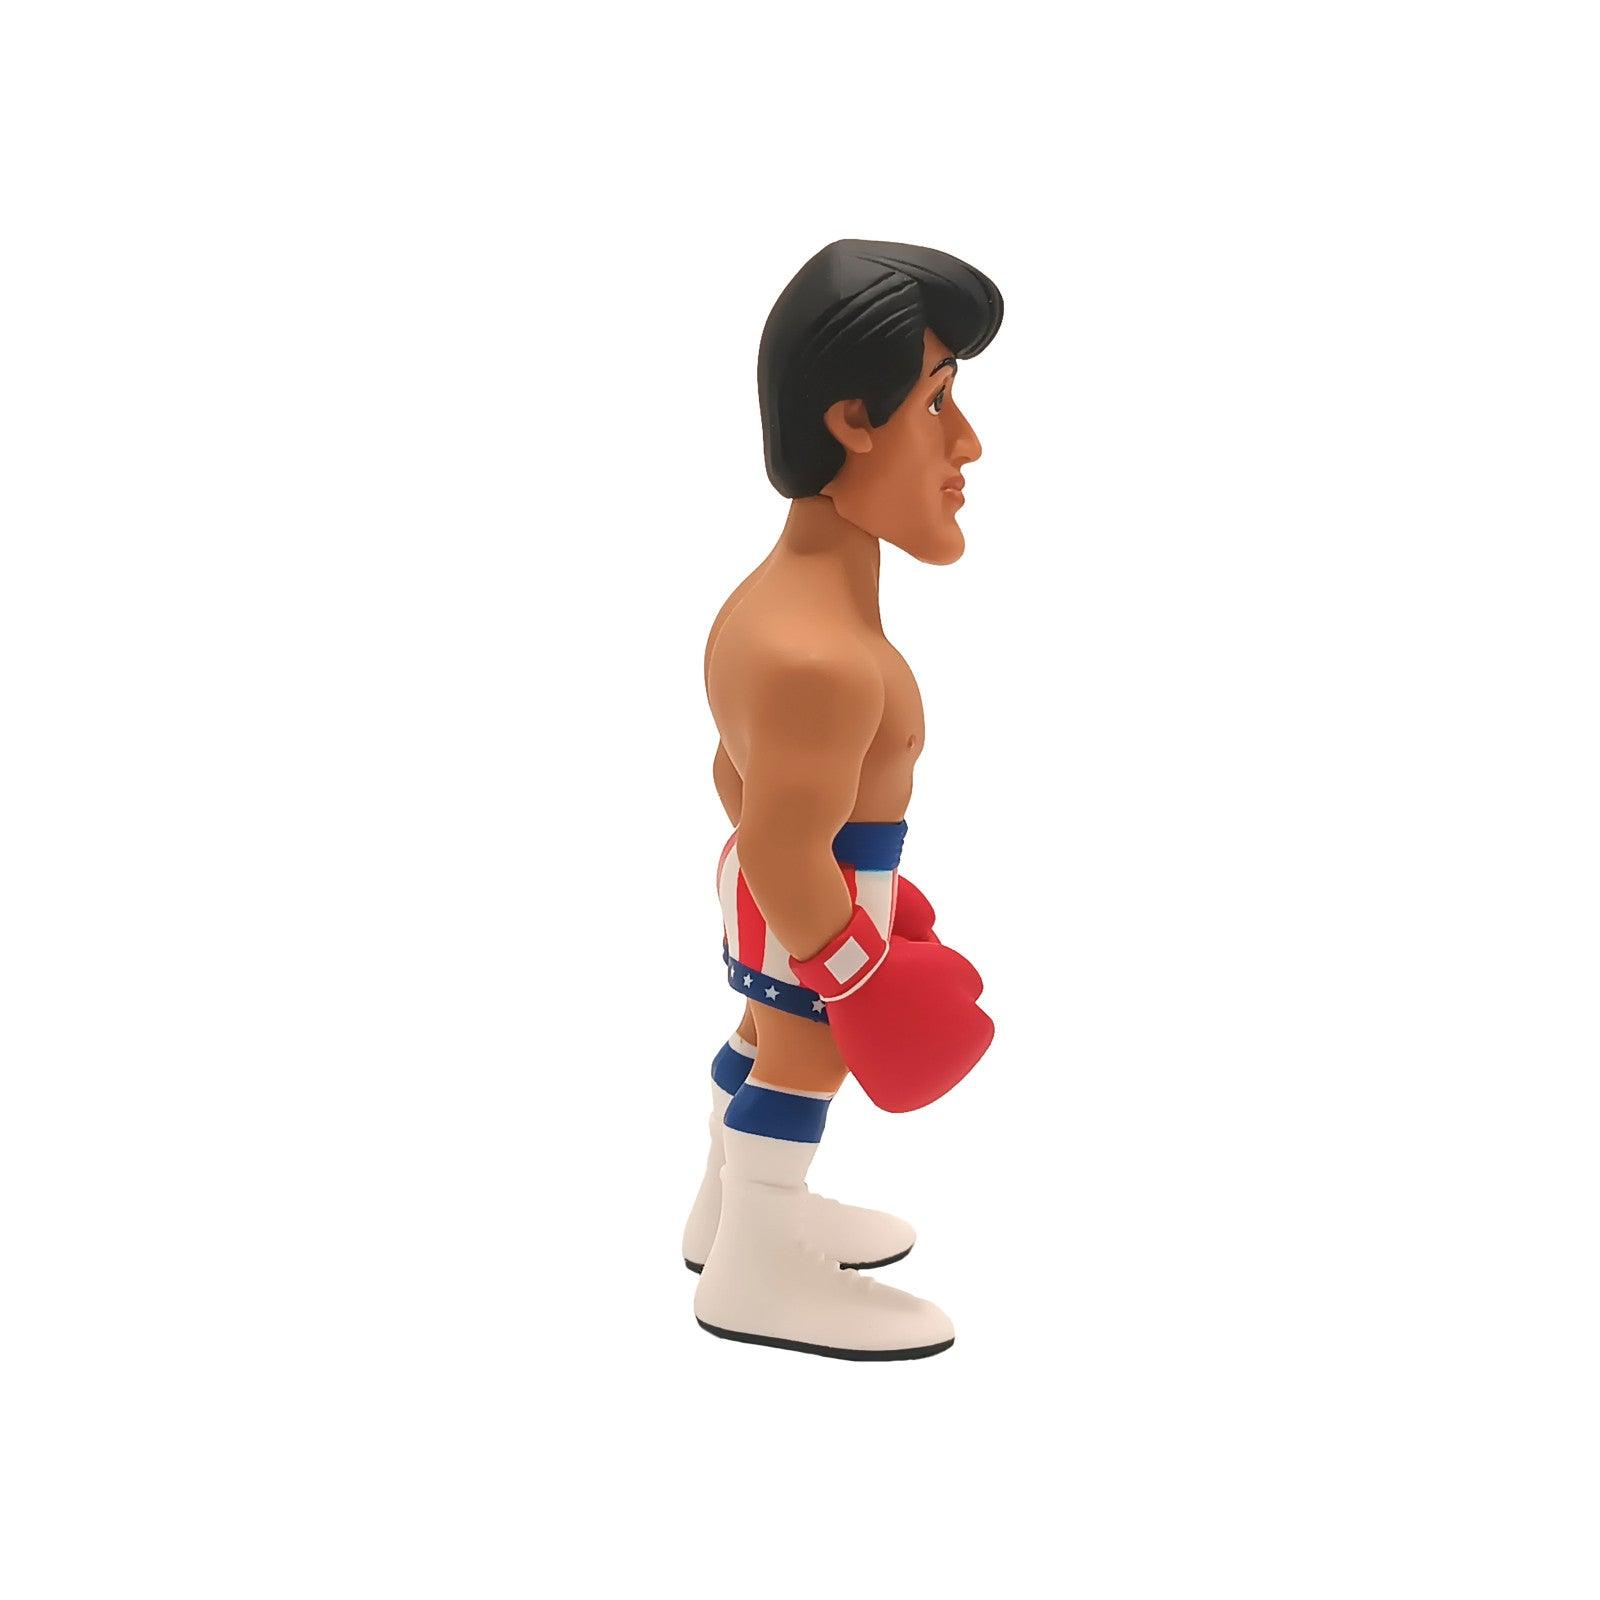 Mego - MINIX Rocky: Rocky Balboa Vinyl Figure